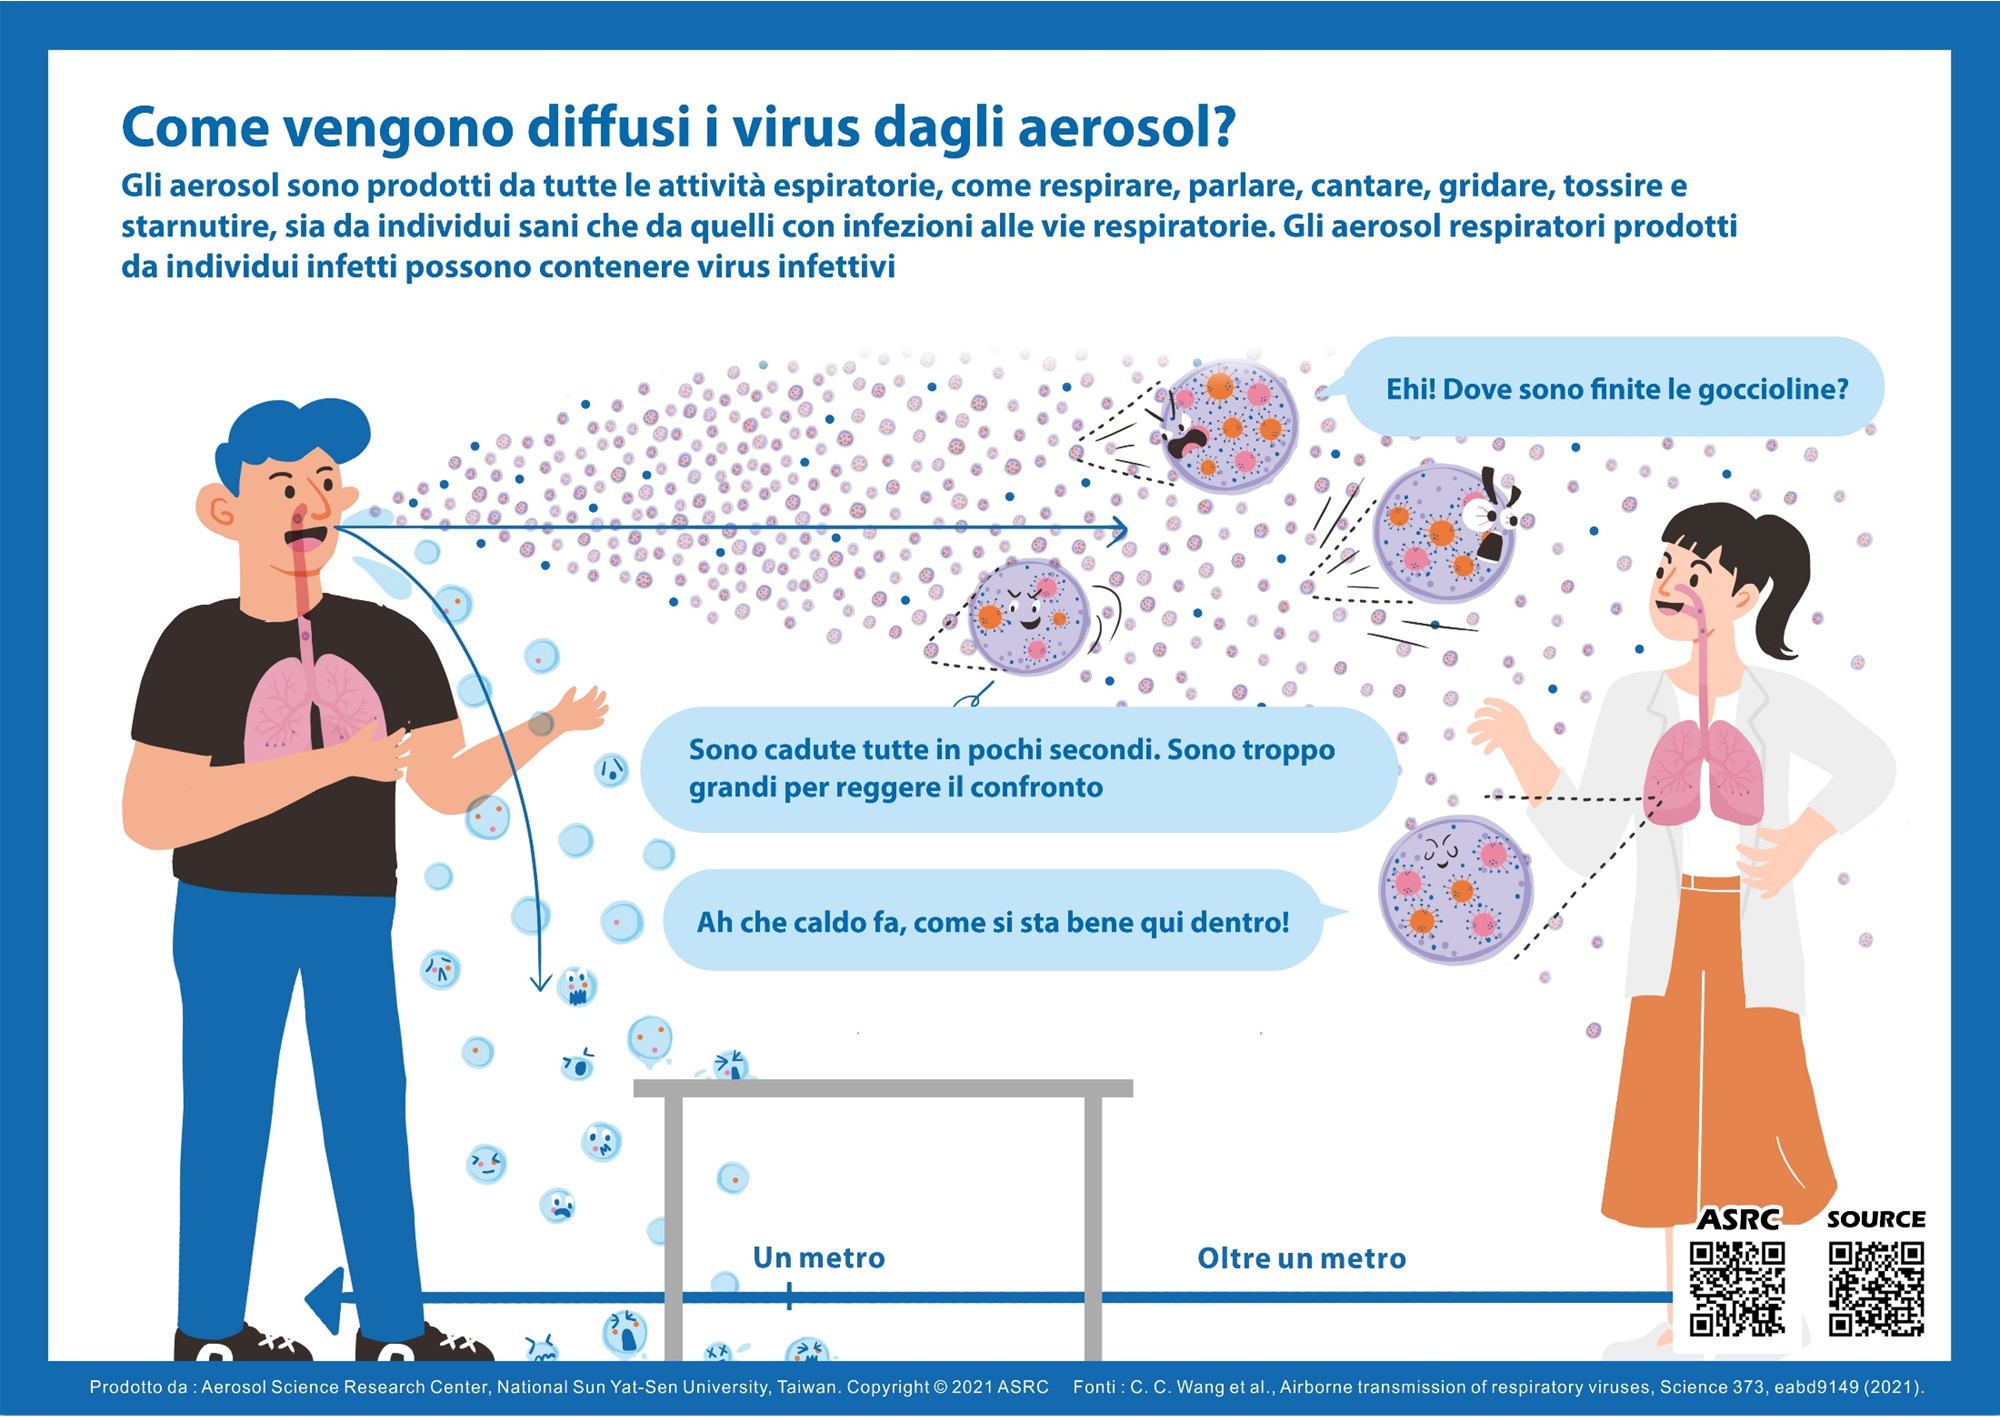 Come vengono diffusi i virus dagli aerosol?